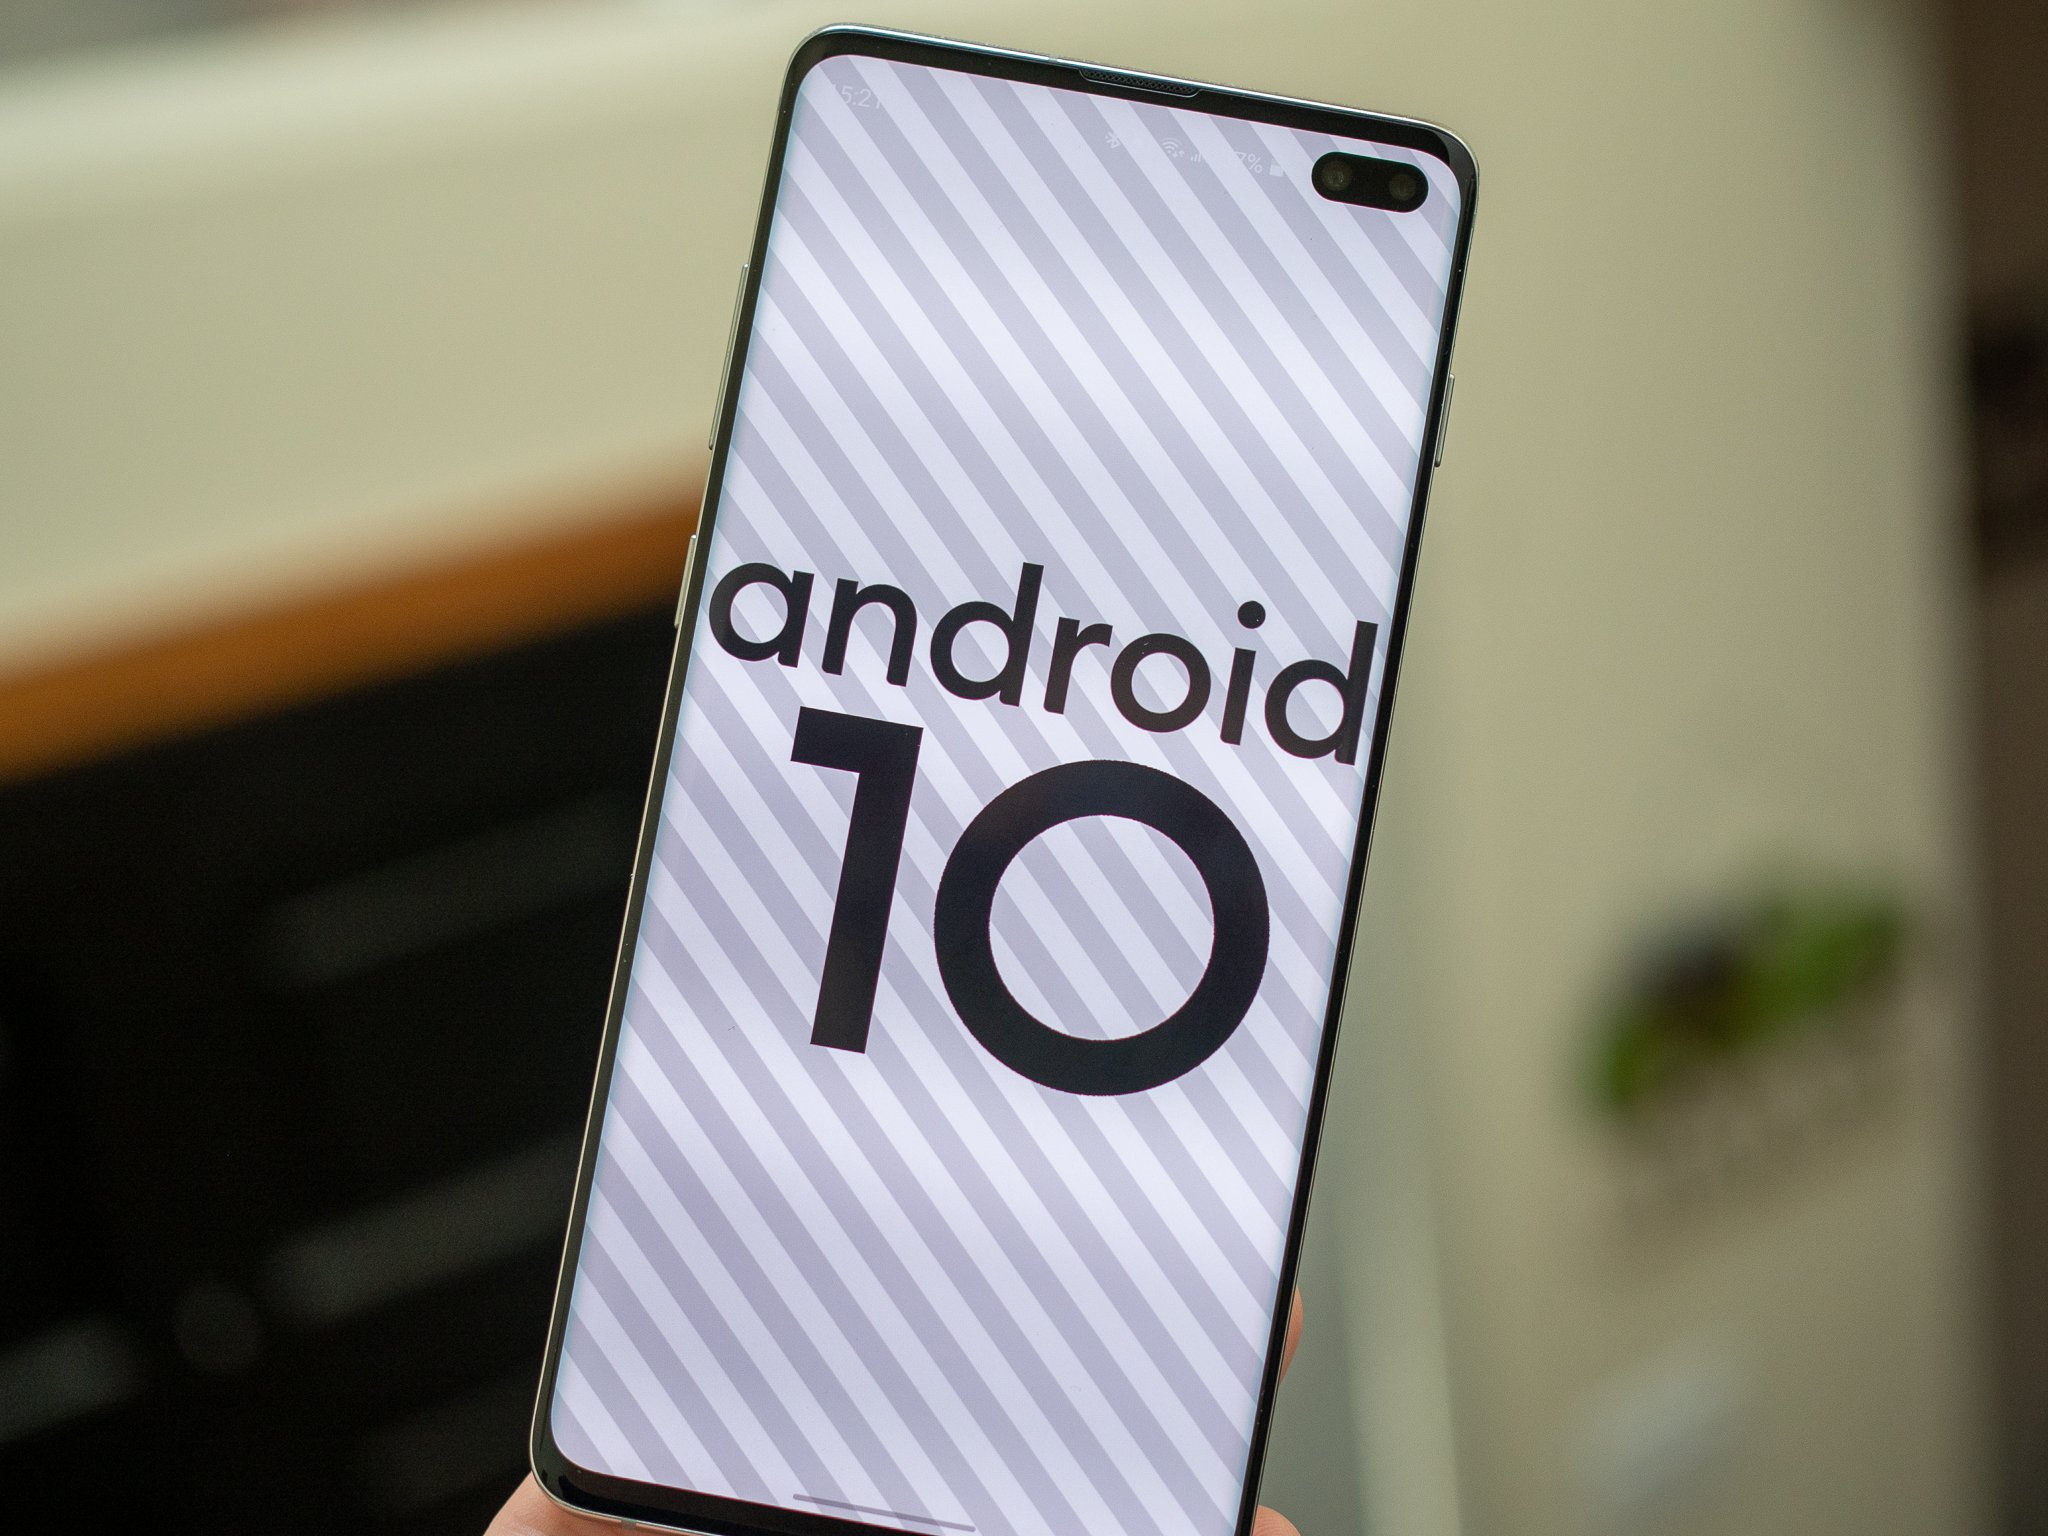 سامسونج تؤخر طرح تحديث One UI 2.0 المستند إلى Android 10 في الهند بسبب COVID-19 68